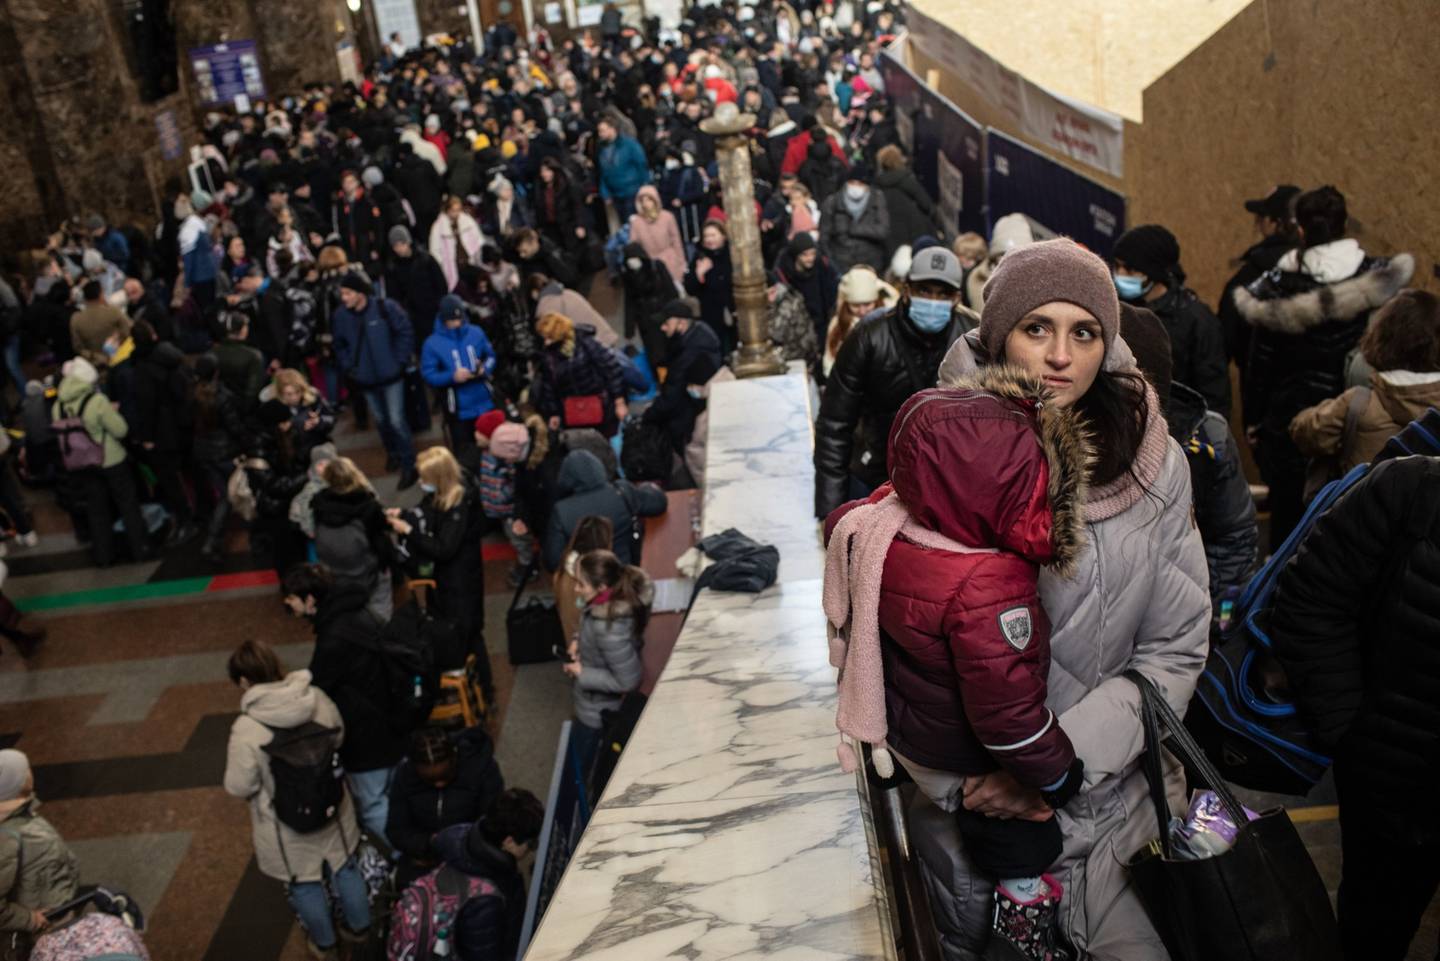 Ucranianos desplazados que intentan abandonar la capital en la estación central de tren de Kiev, el 28 de febrero.dfd